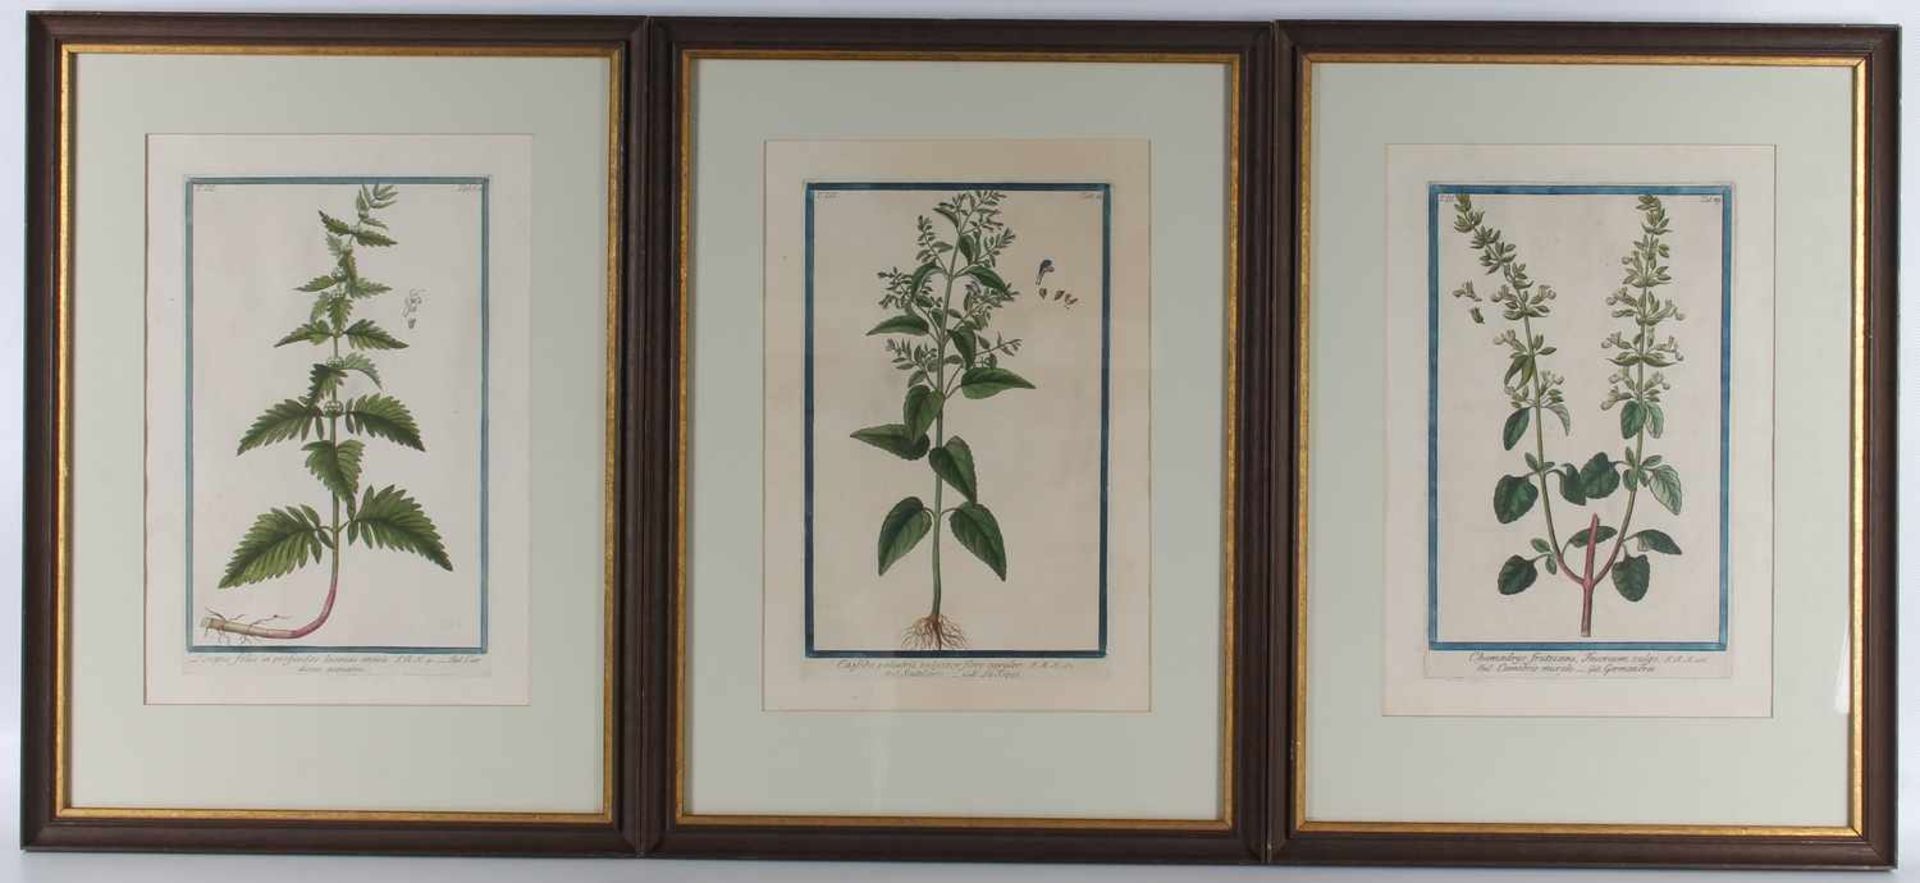 18. Jahrhundert, 3 altkoloriert Pflanzen Kupferstiche,Kupferstiche, diverse botanische